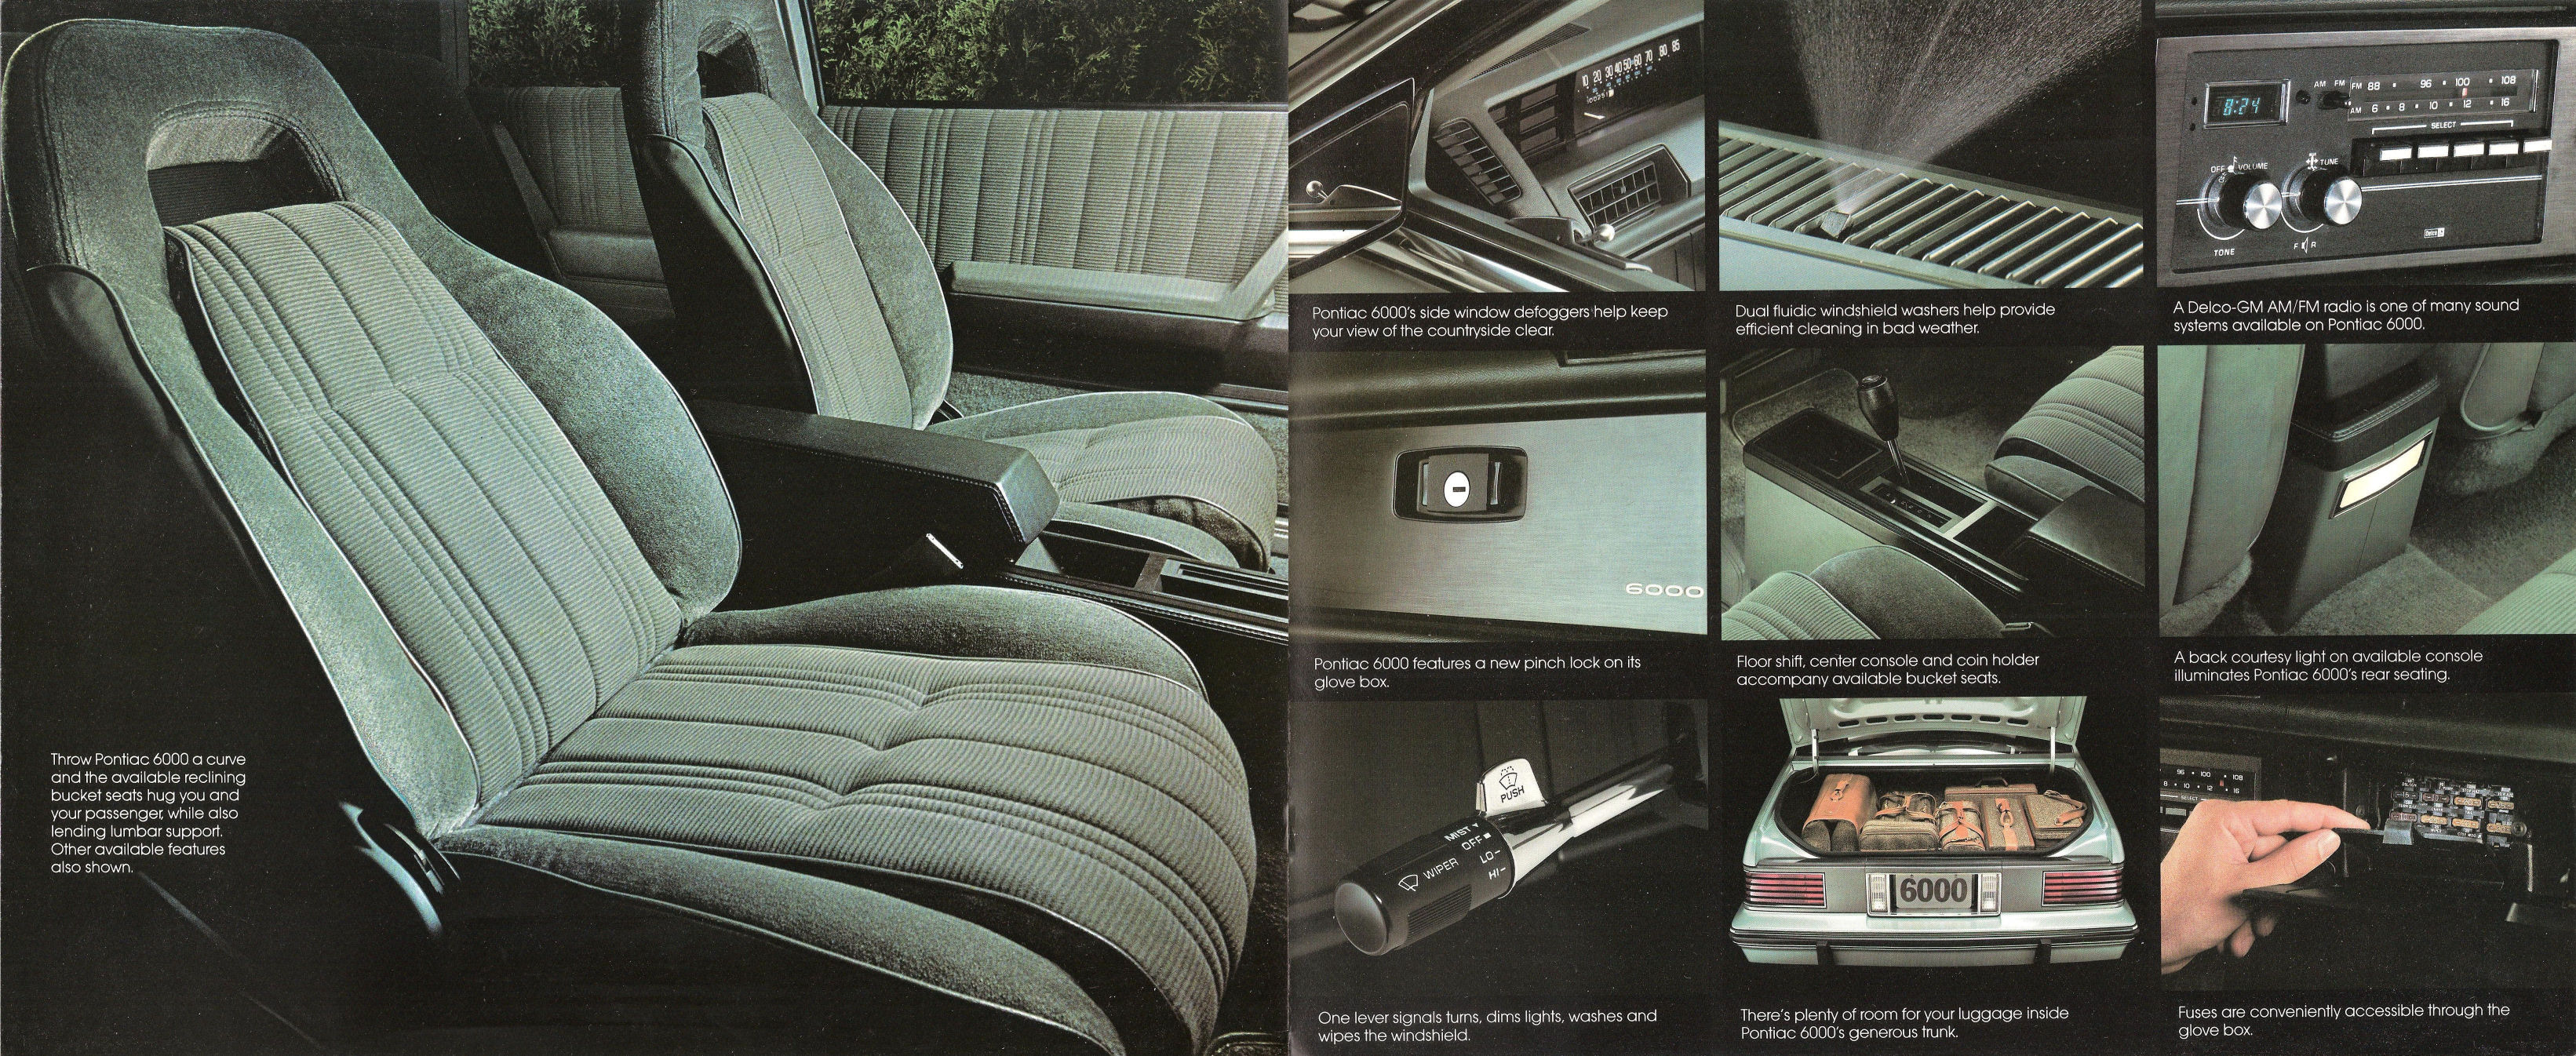 1982_Pontiac_6000-08-09